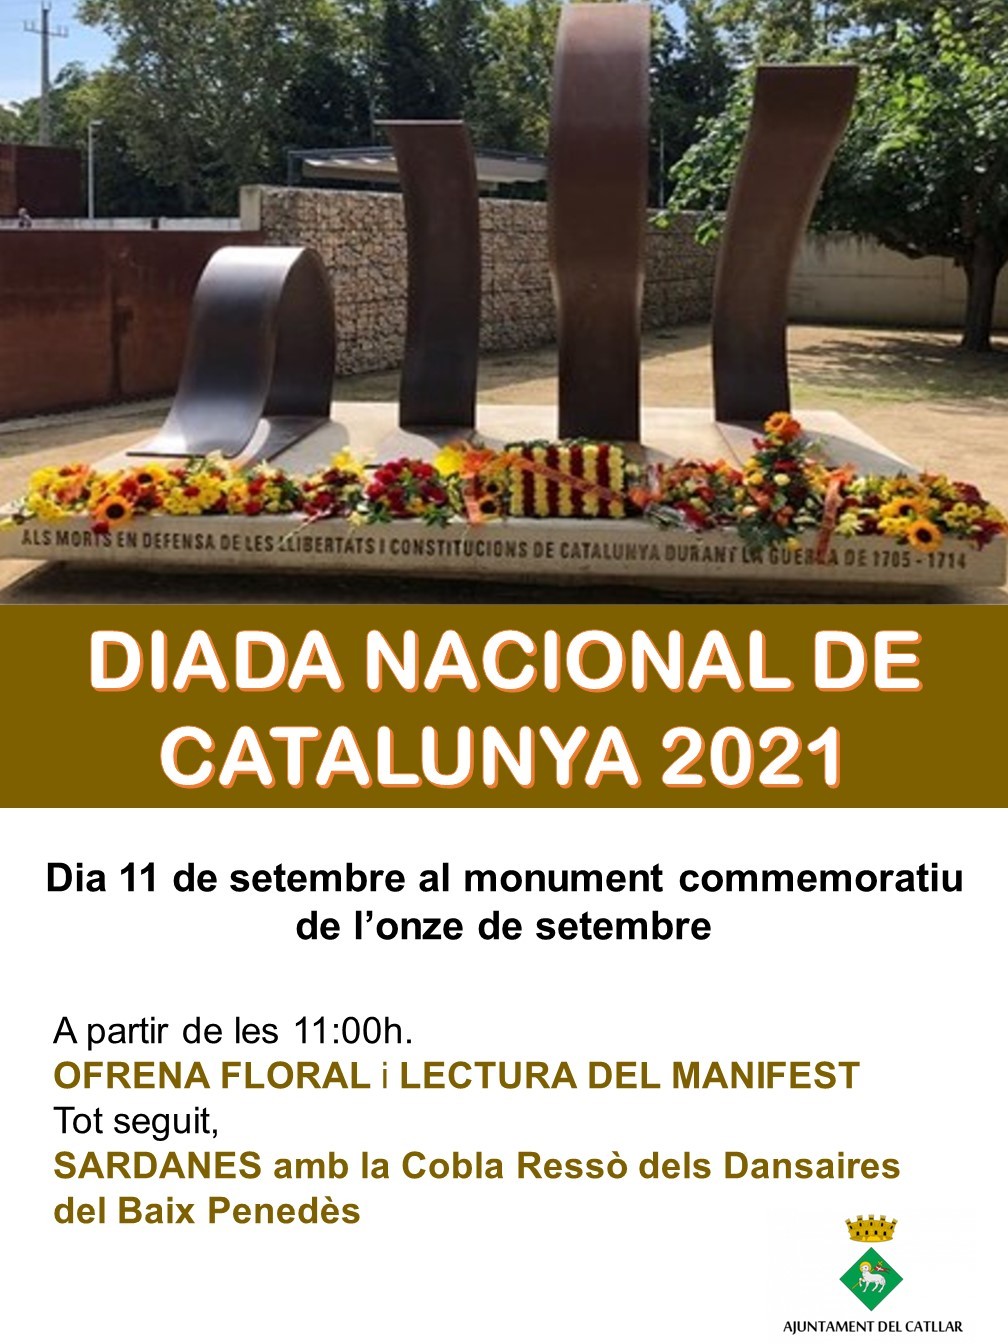 DIADA NACIONAL DE CATALUNYA 2021